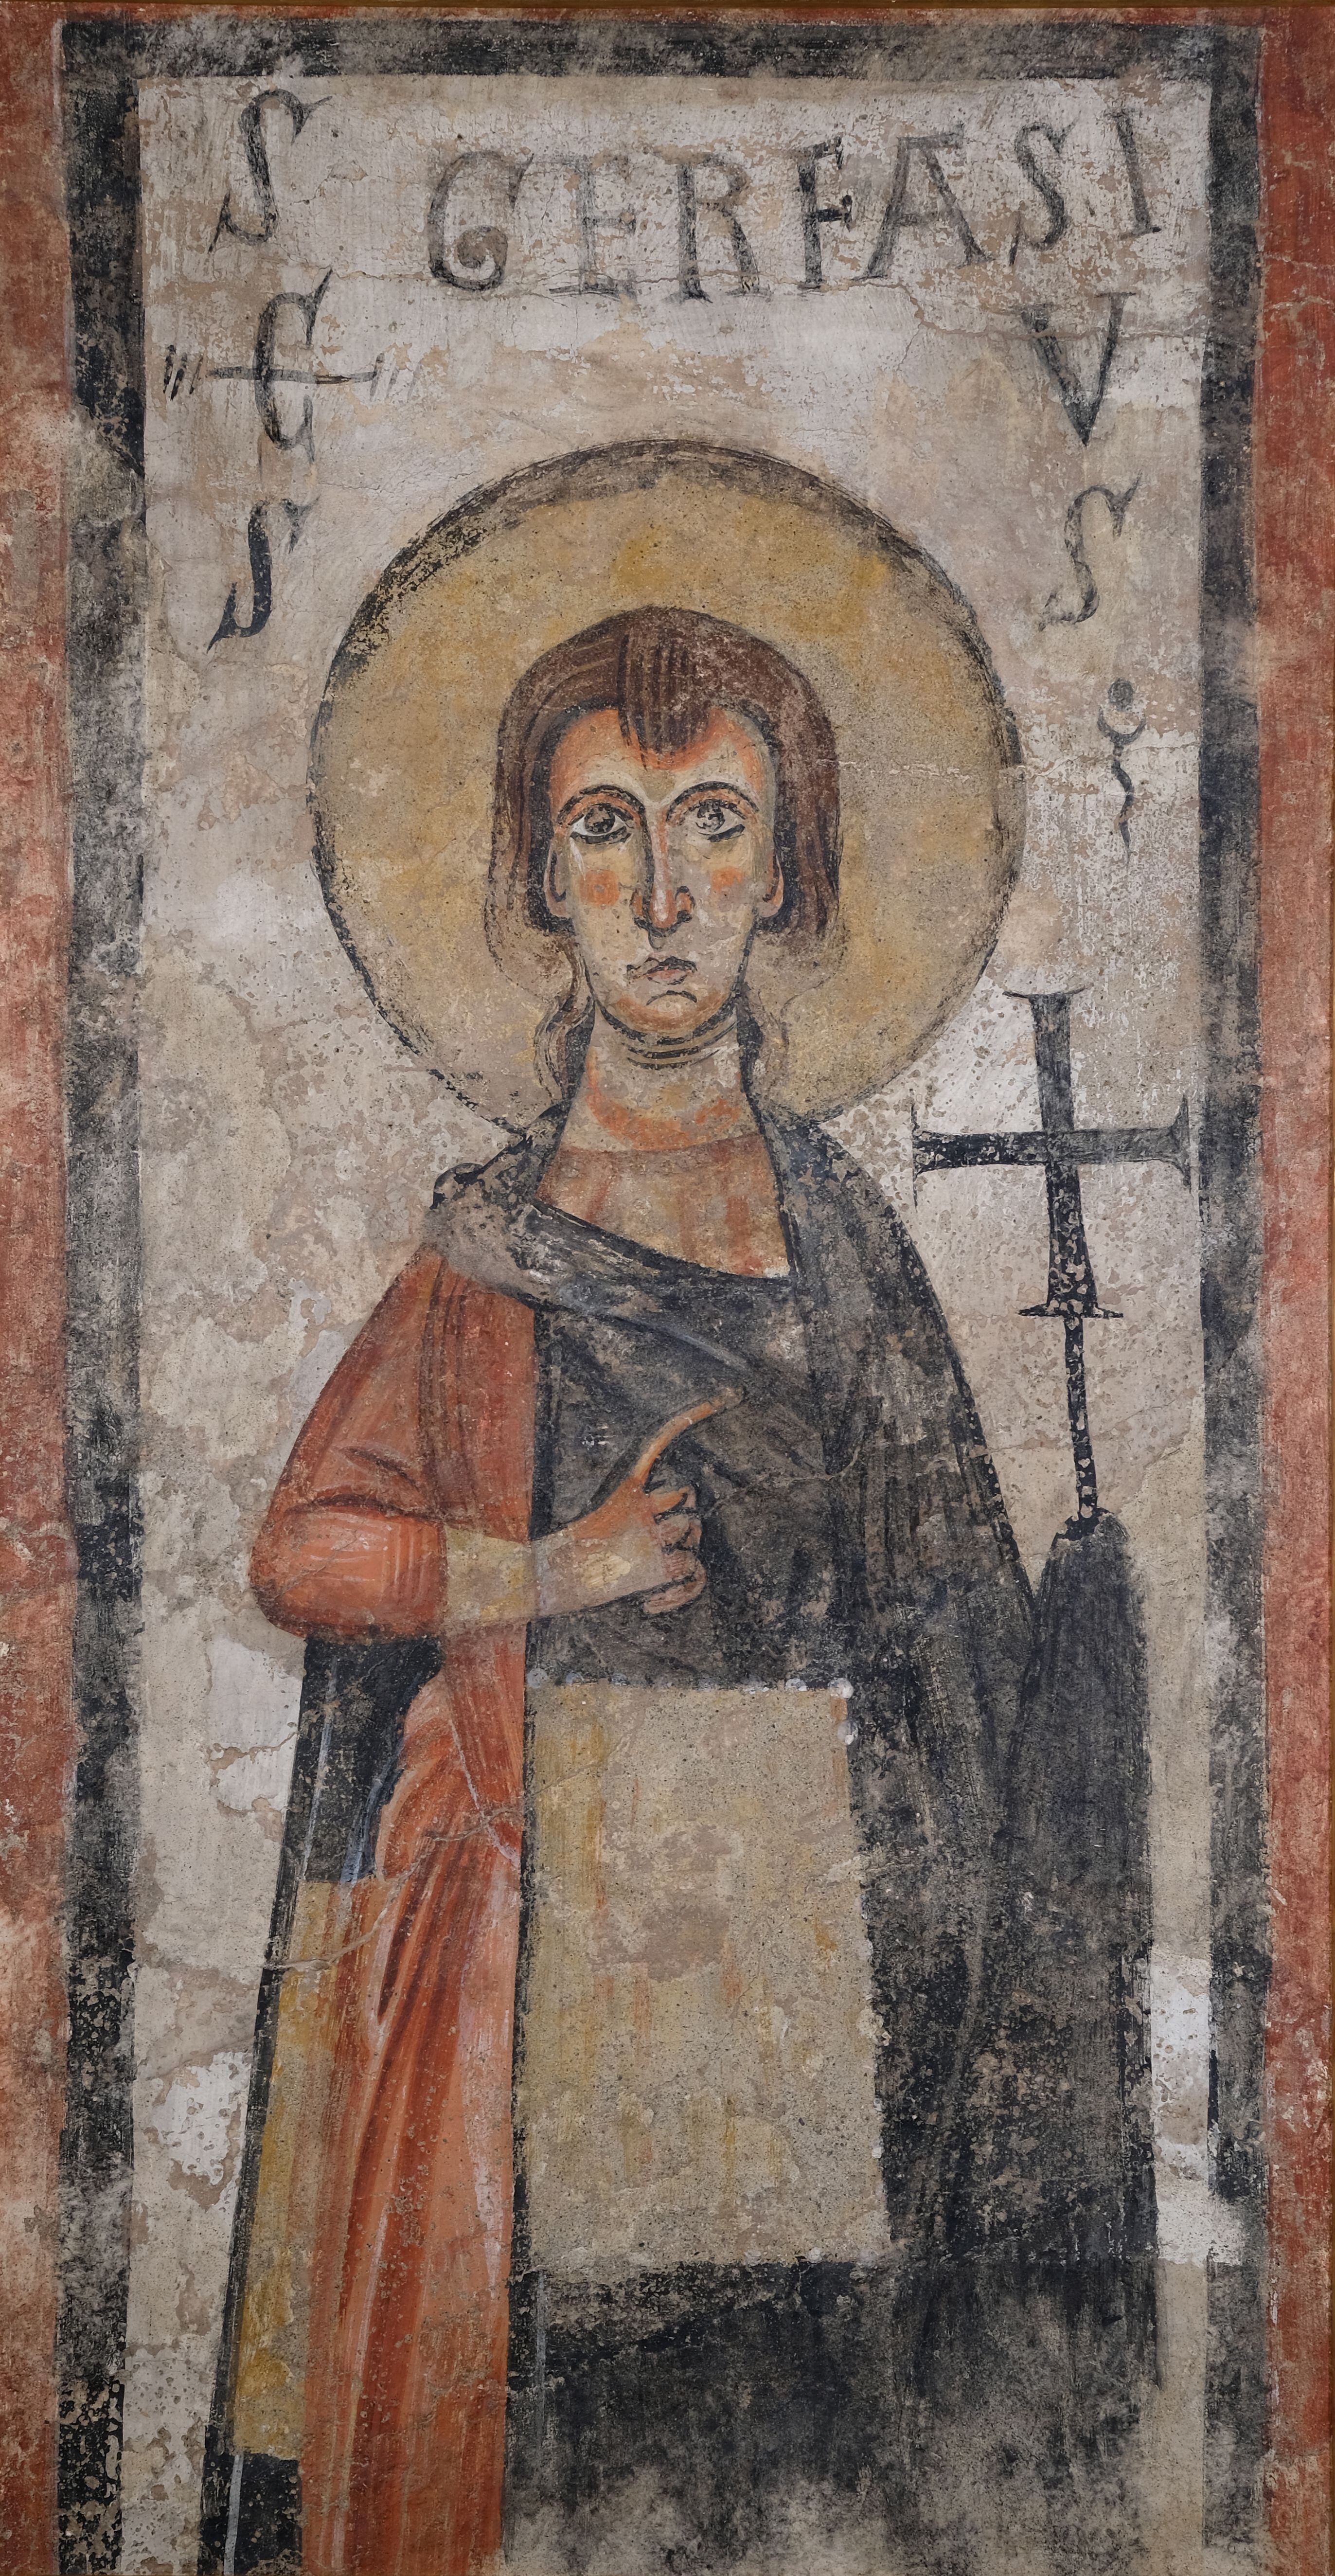 Pintura de San Gervasio en la iglesia de Santa Maria de Cap d’Aran (Tredós), una de las obras encontradas en Suiza.